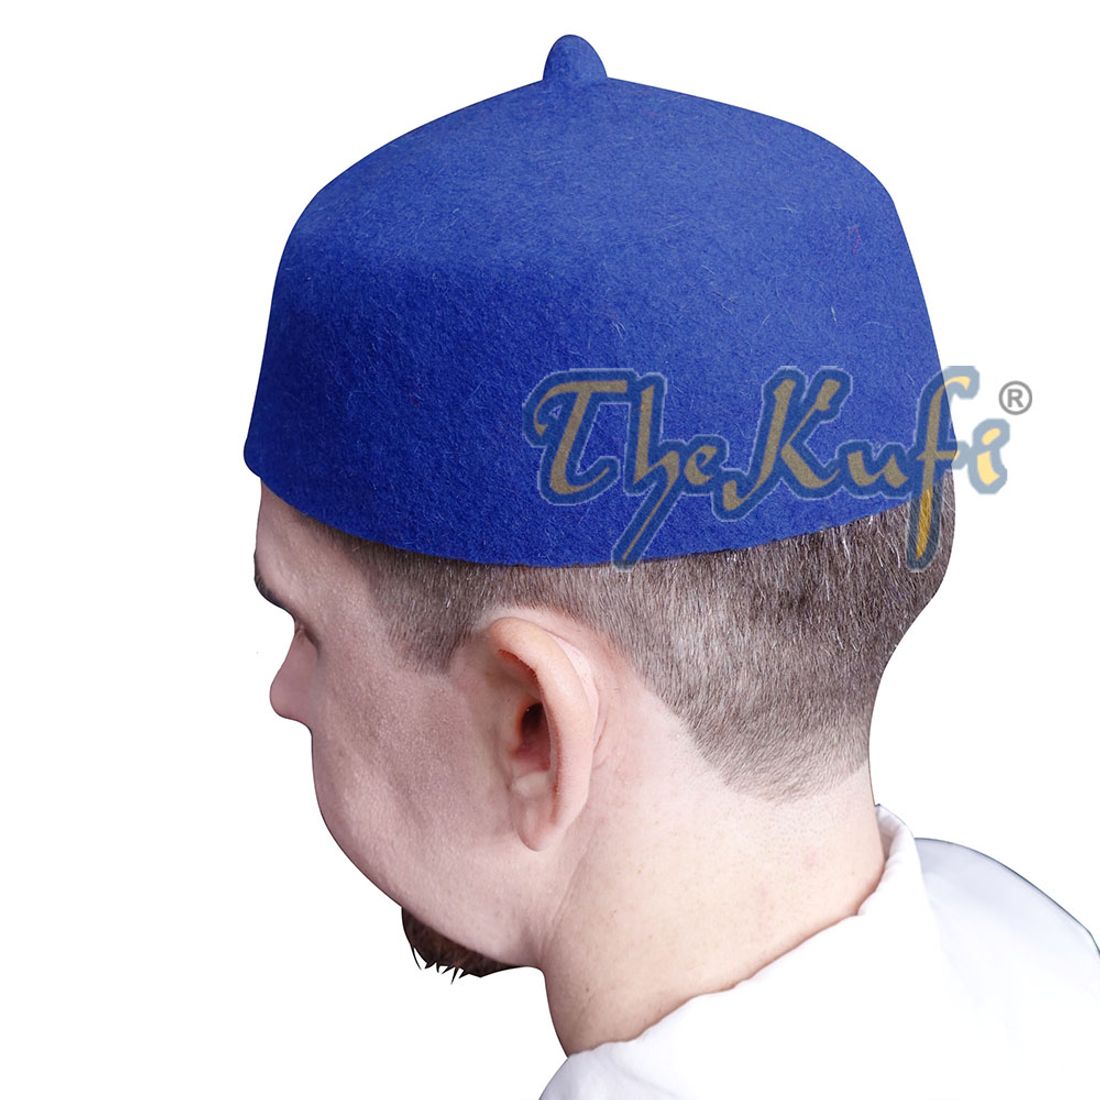 Blue Felt Wool Fez Hat with Tip Kufi Prayer Cap